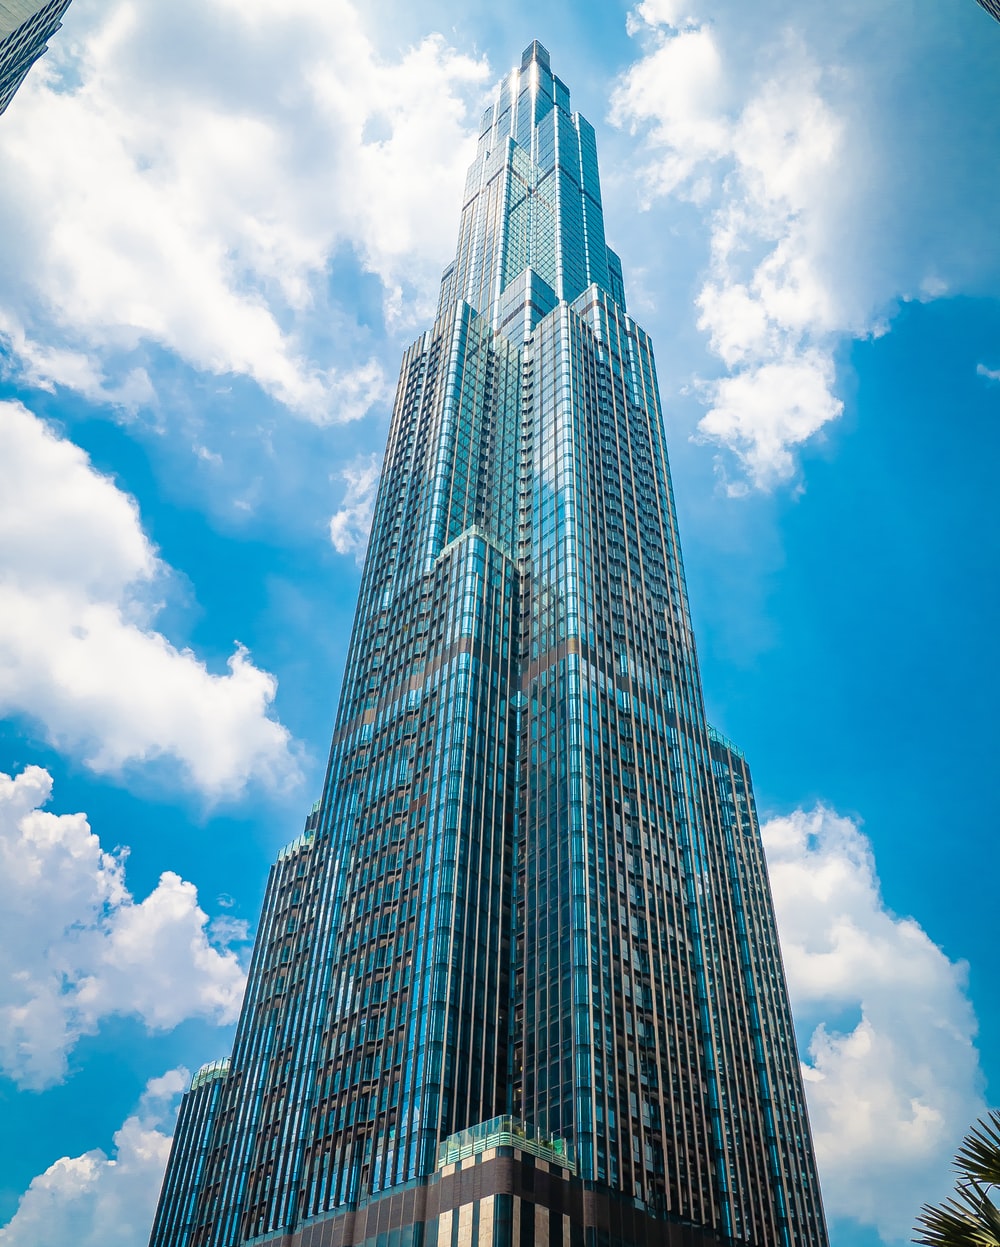 Tall Building Image - KibrisPDR